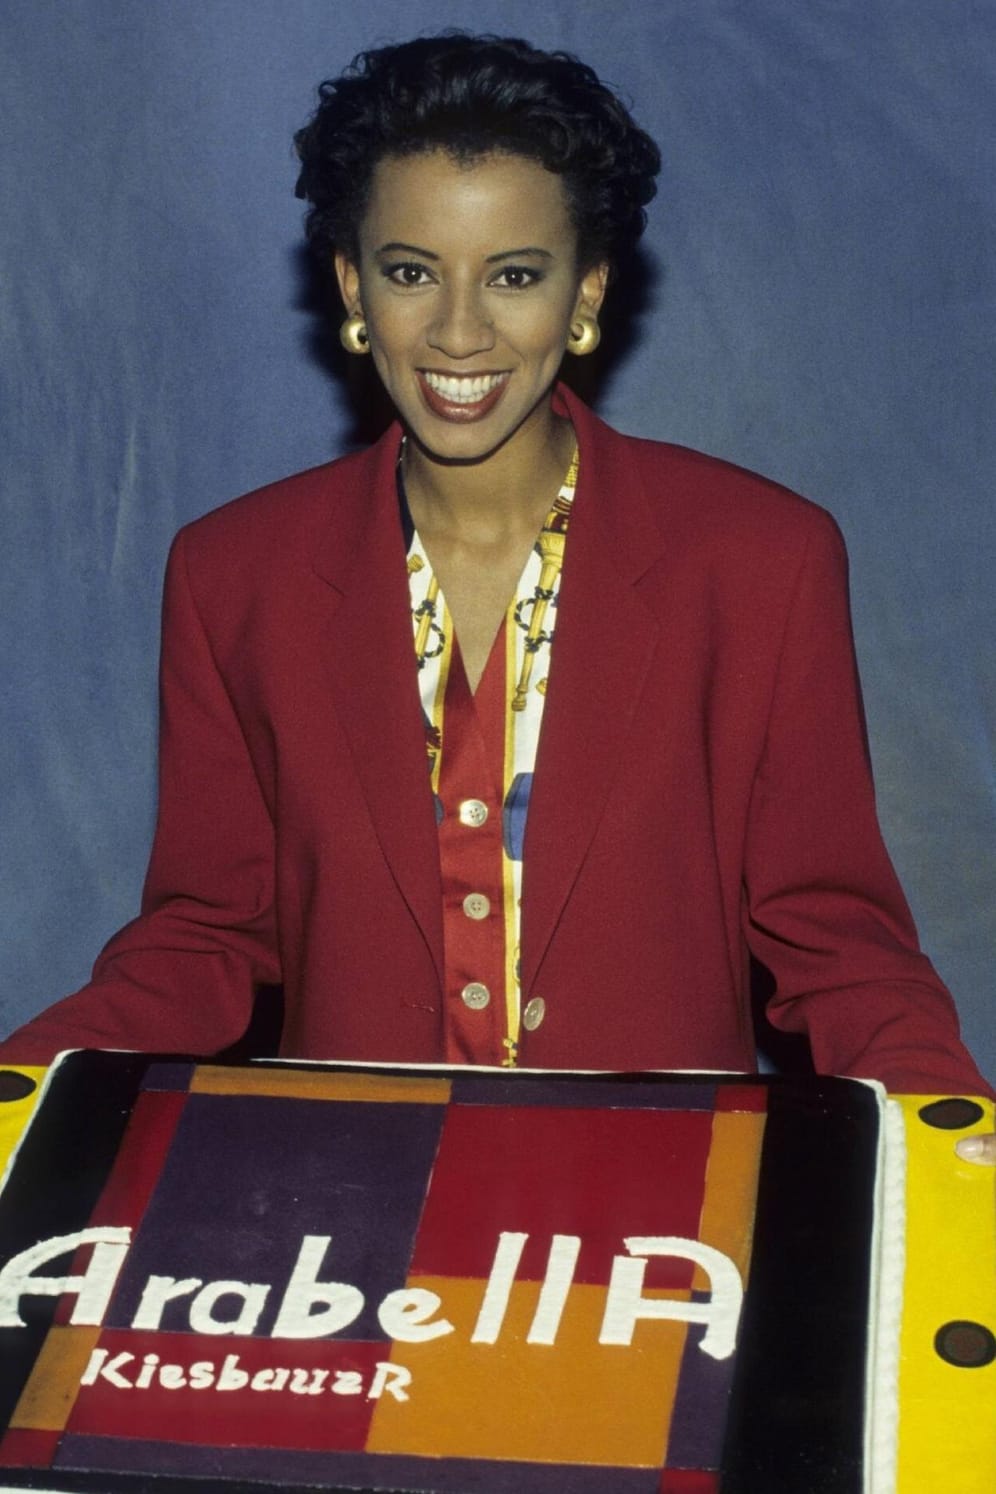 Arabella Kiesbauer: Ihre Talkshow "Arabella" startete 1994 auf ProSieben und lief zehn Jahre lang im TV.